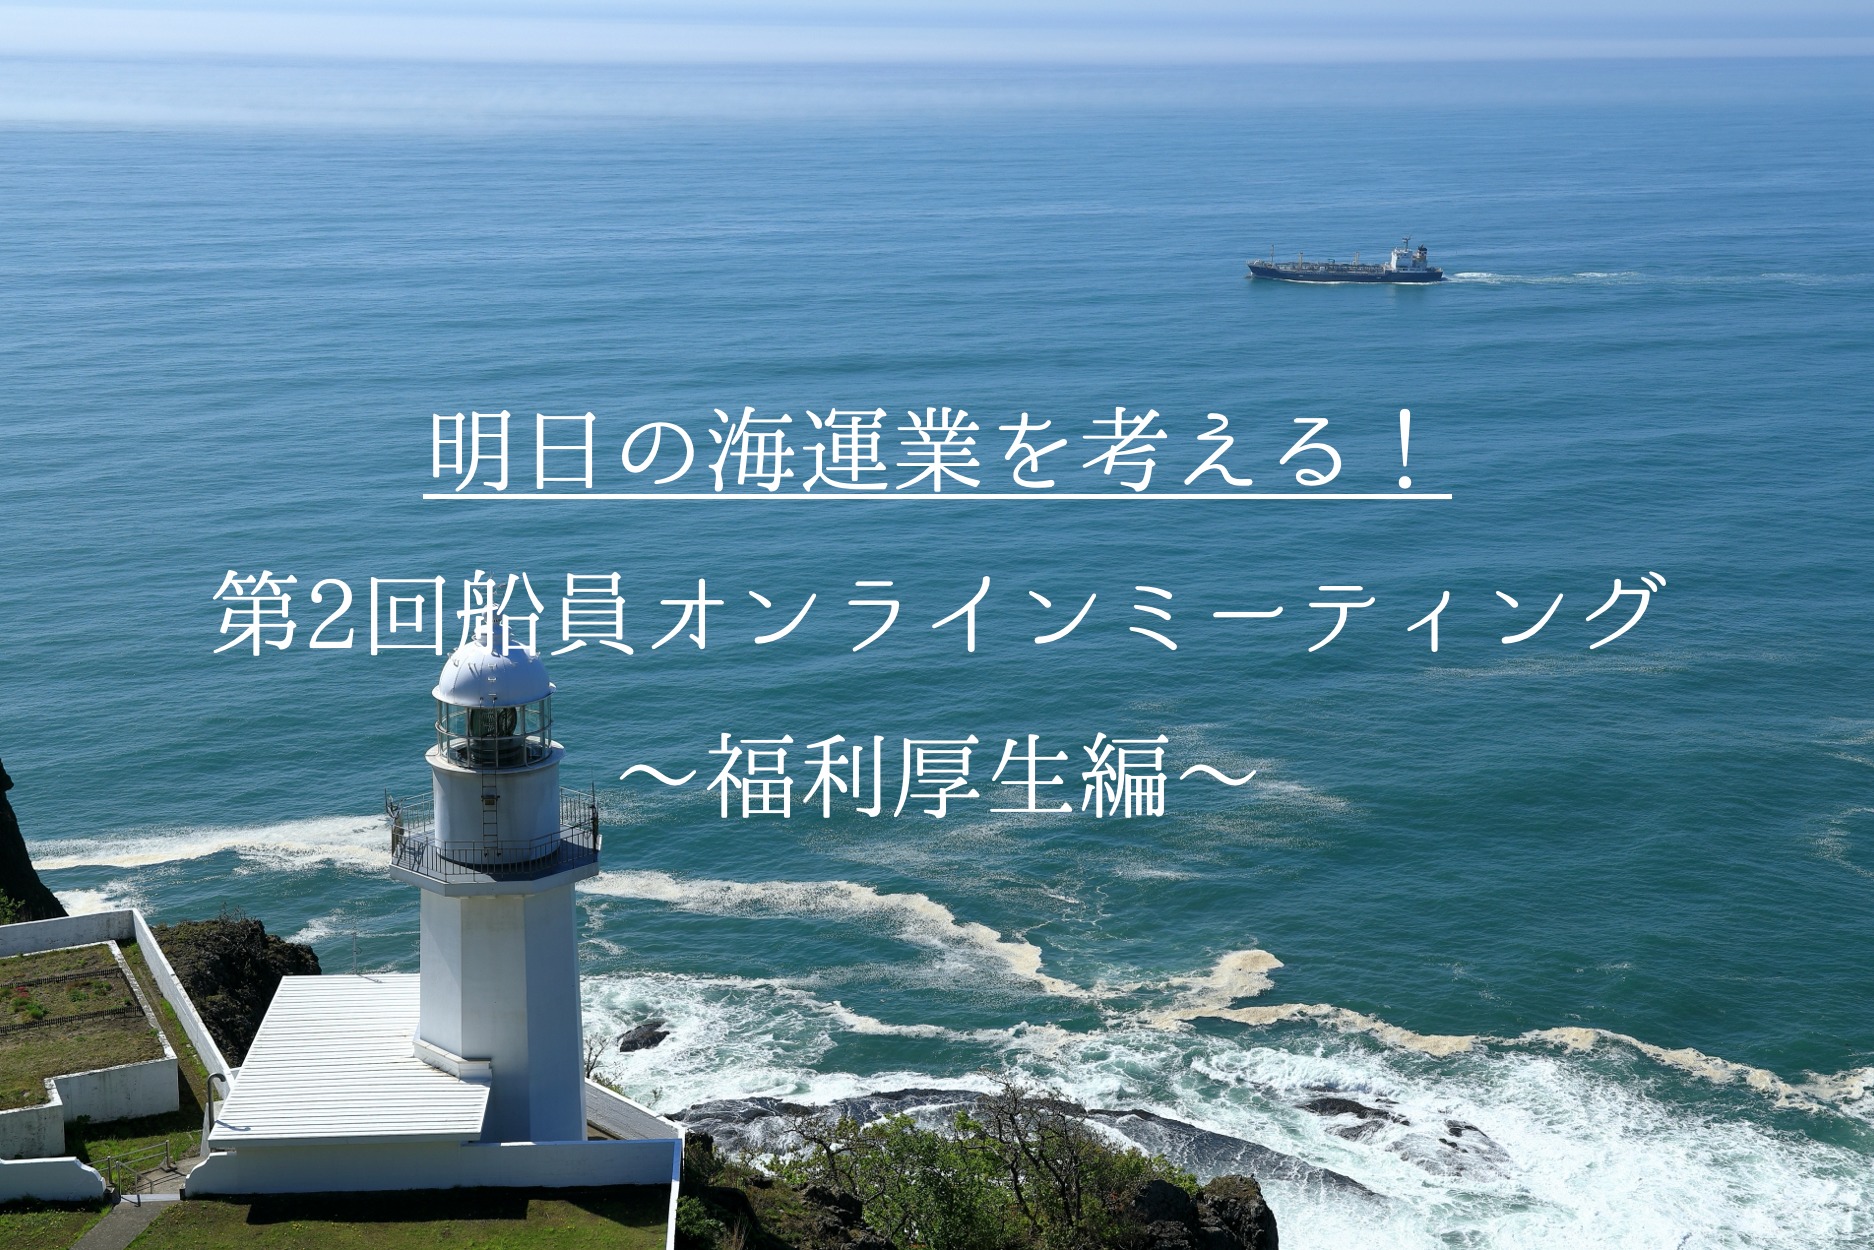 明日の海運業を考える！第2回船員オンラインミーティング〜福利厚生編〜